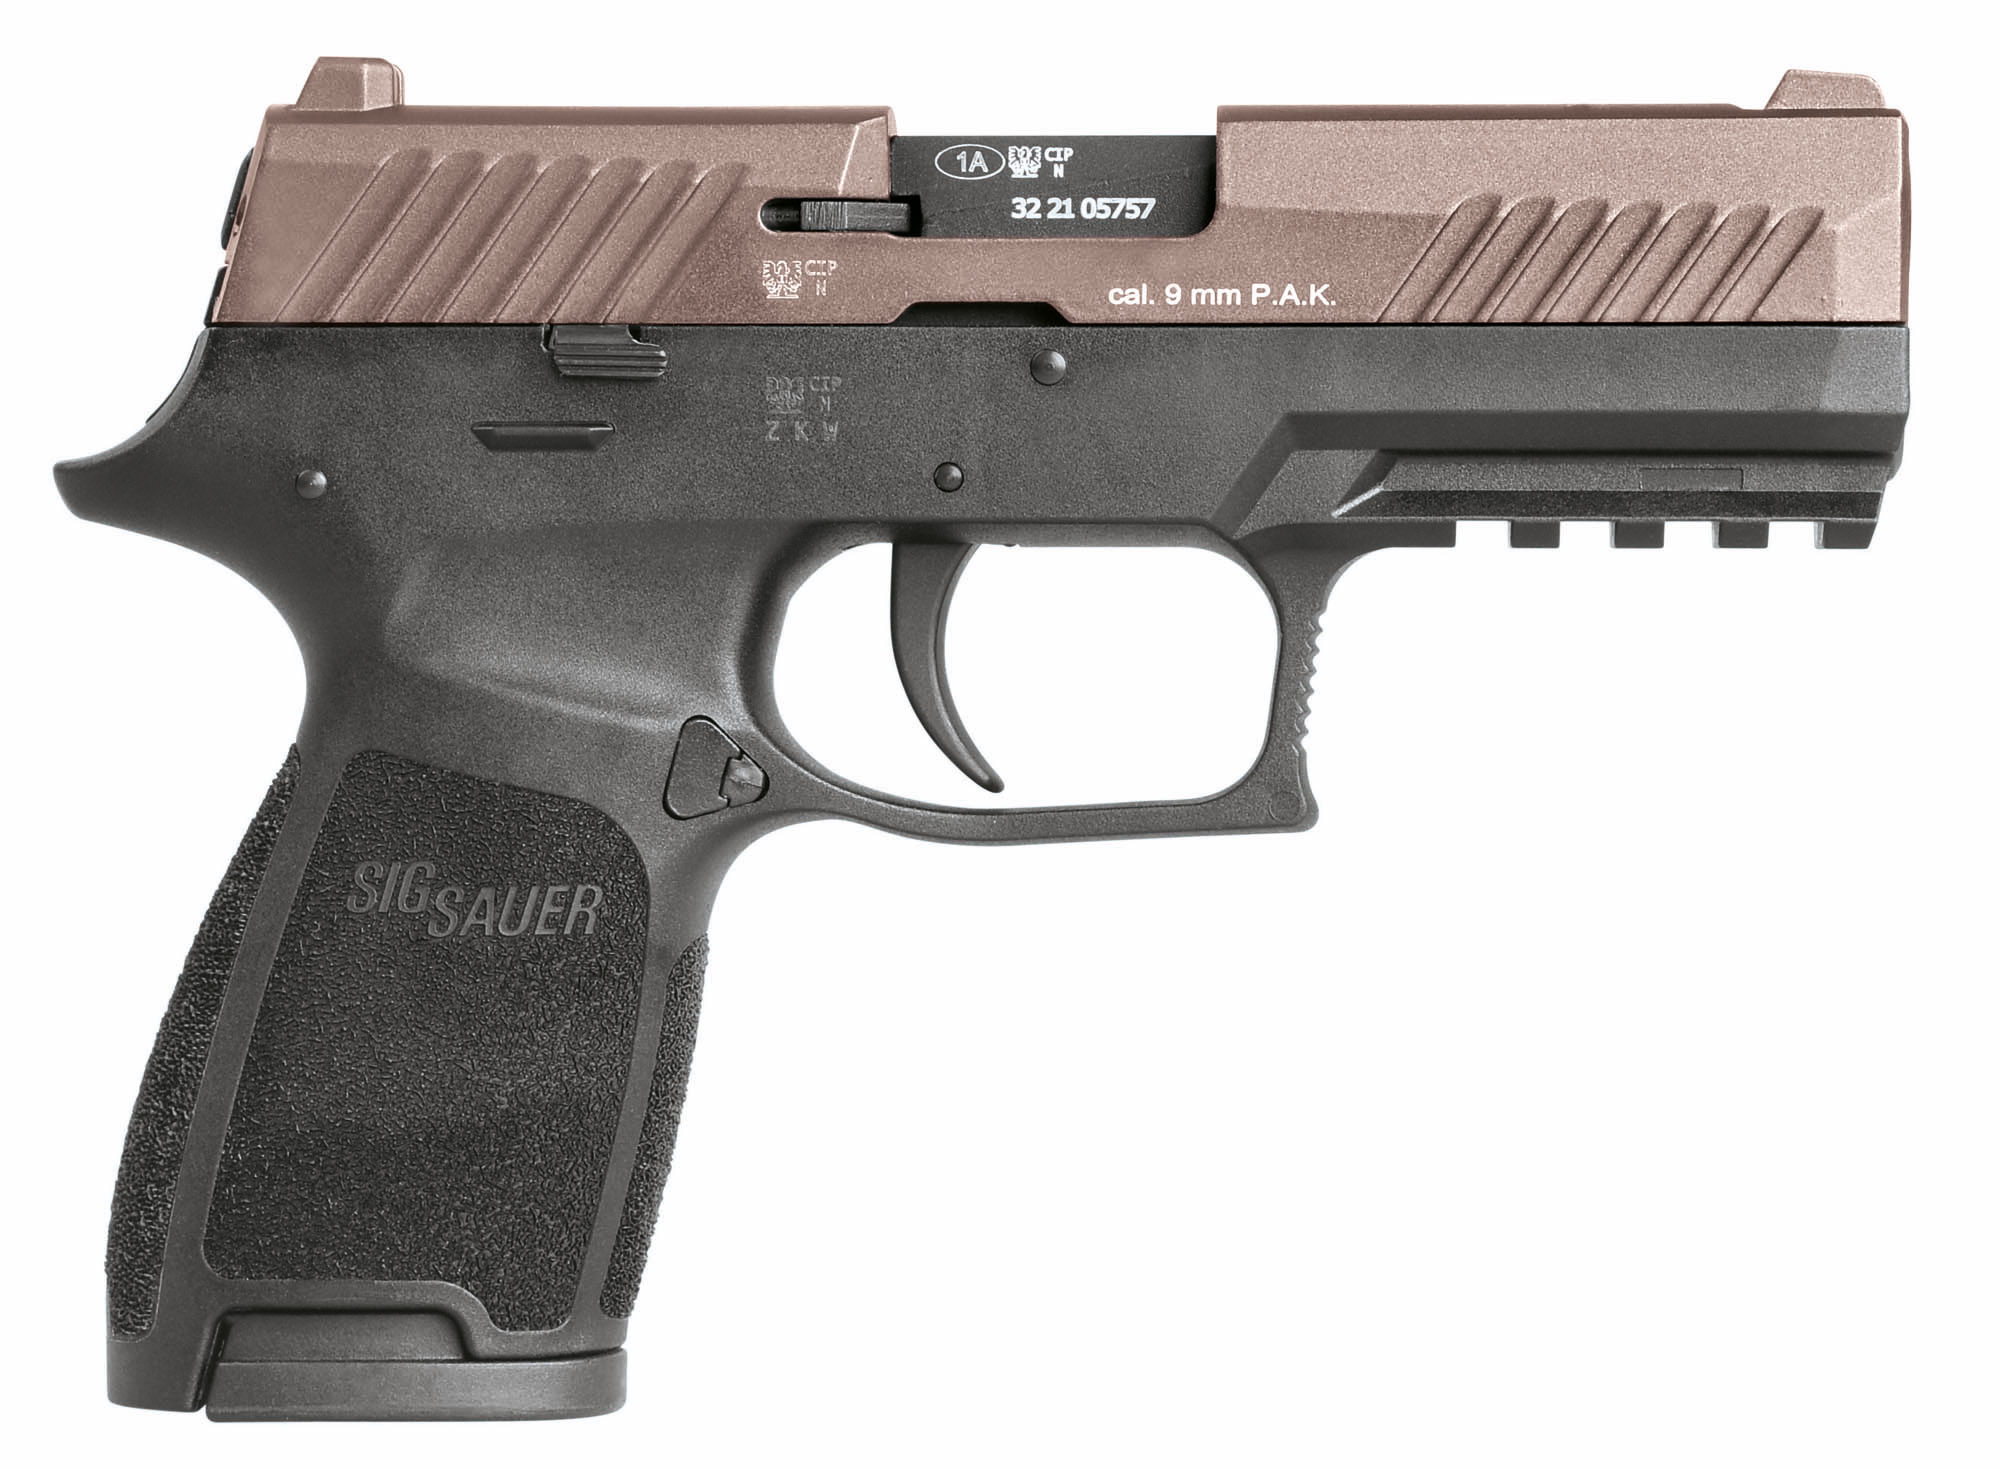 ACP674-2 Pistolet à blanc SIG SAUER P320 noir 9mm P.A.K. Pink Gold